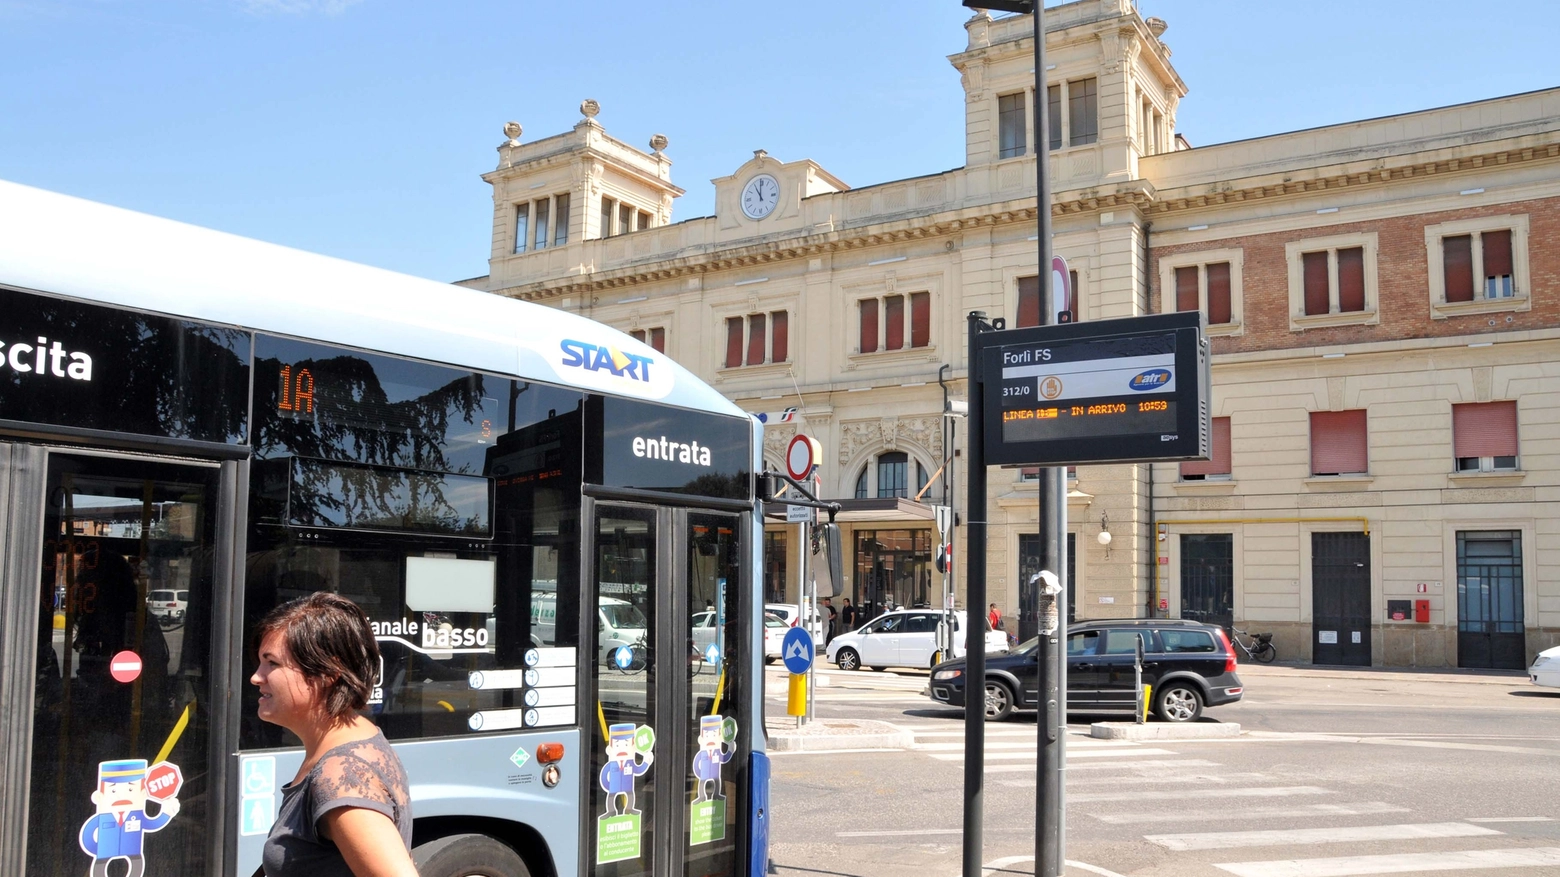 Sciopero 8 marzo 2019, possibili disagi per chi viaggia in bus in Romagna